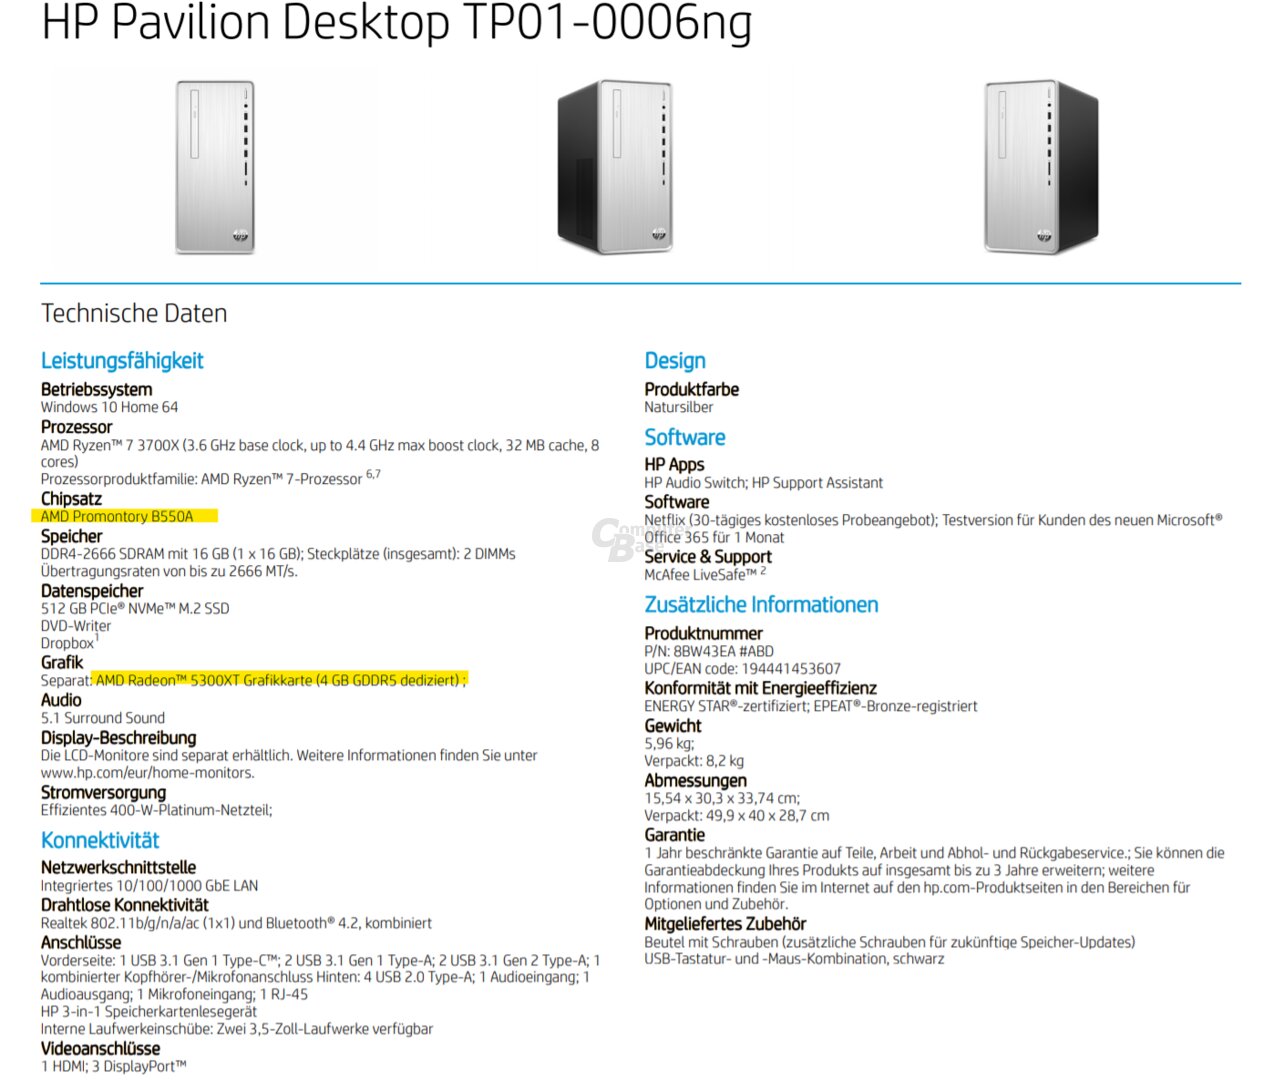 Image 1 : Un chipset AMD B550 et des Radeon RX 5300 XT listés dans des PC HP